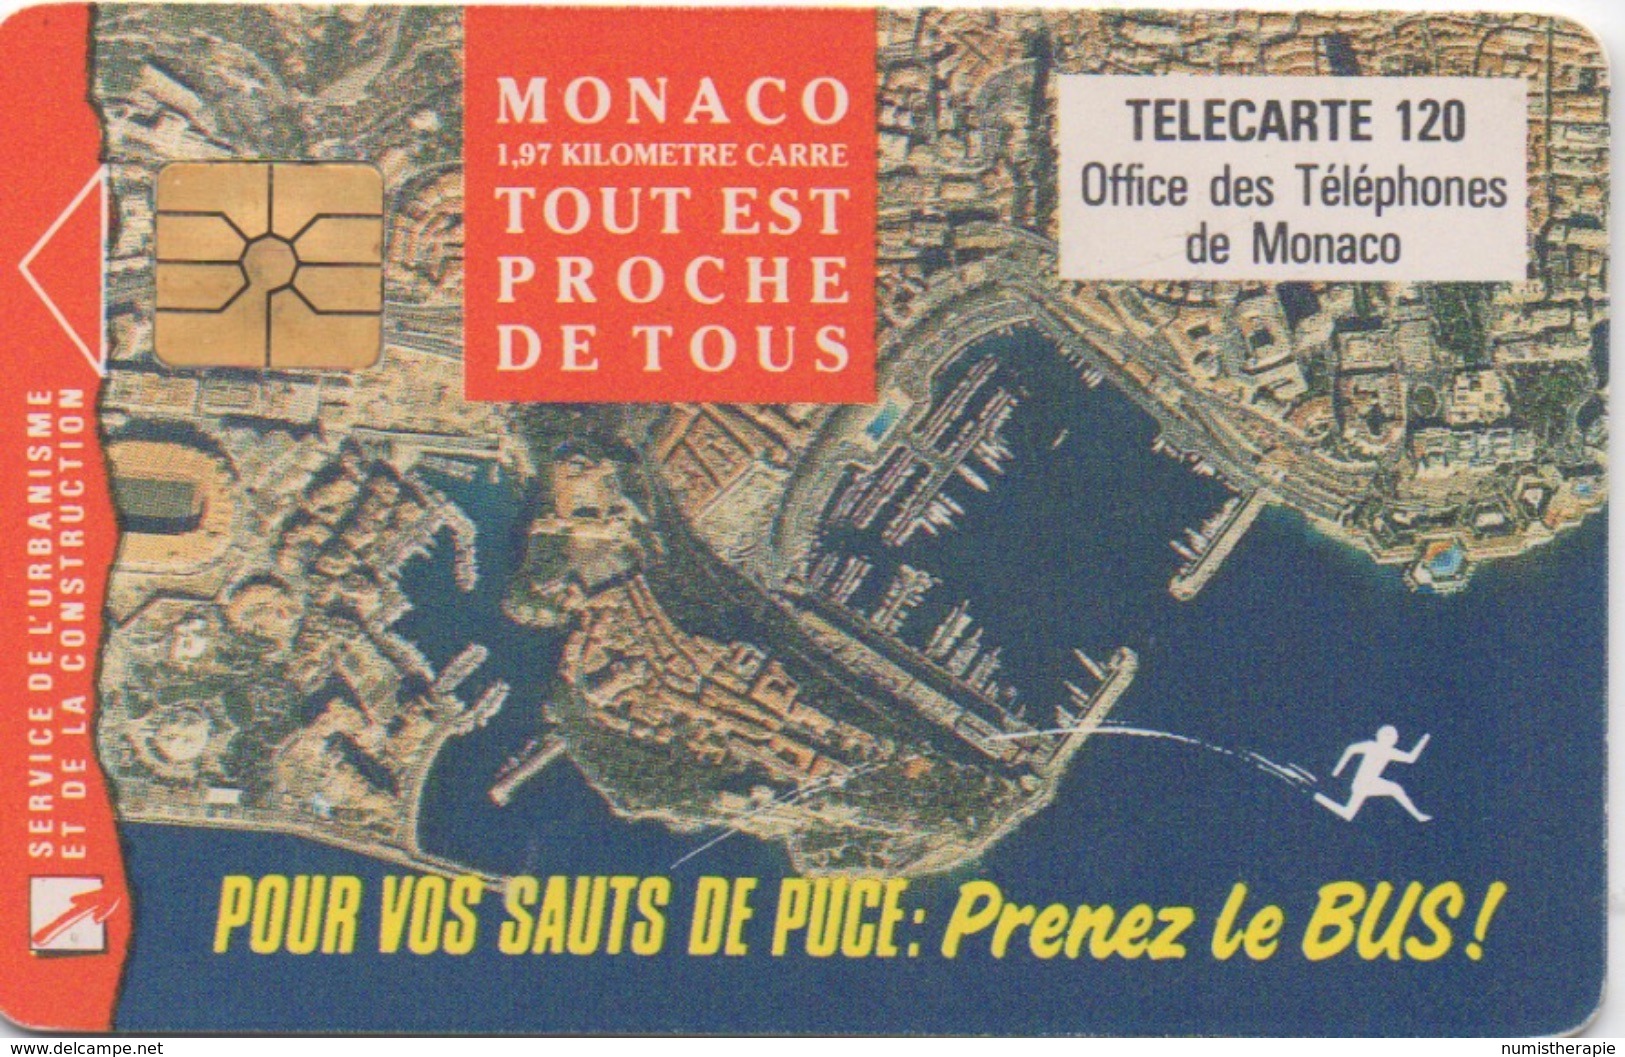 Monaco : 1,97 Kilomètre Carré - Tout Est Proche De Tous 1993 - Monaco